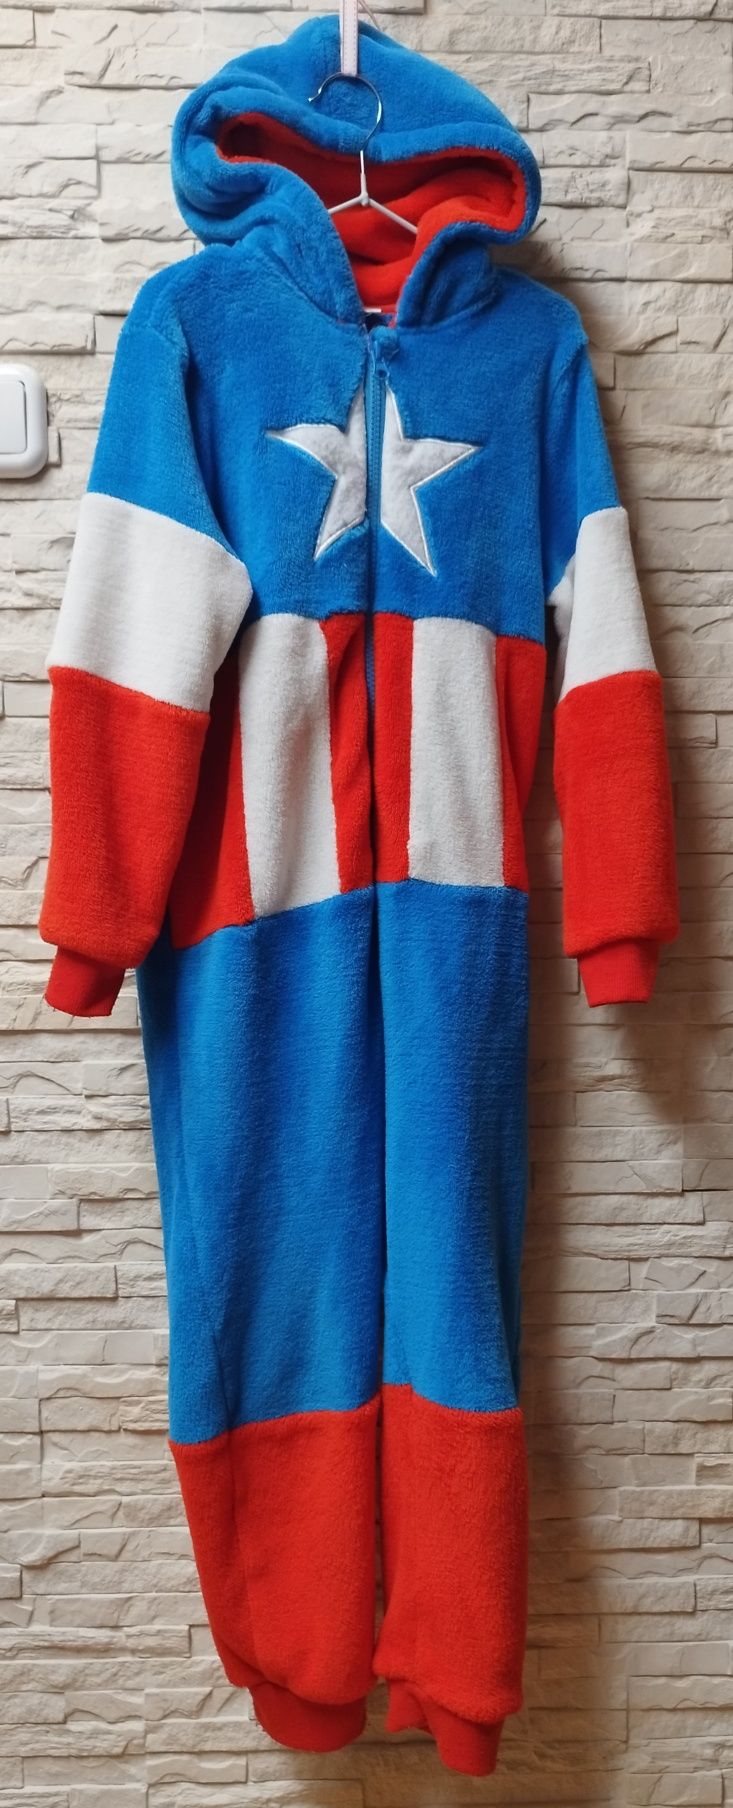 ?Kombinezon,piżama,kigurimi,strój karnawałowy,Avengers Kapitan Ameryka